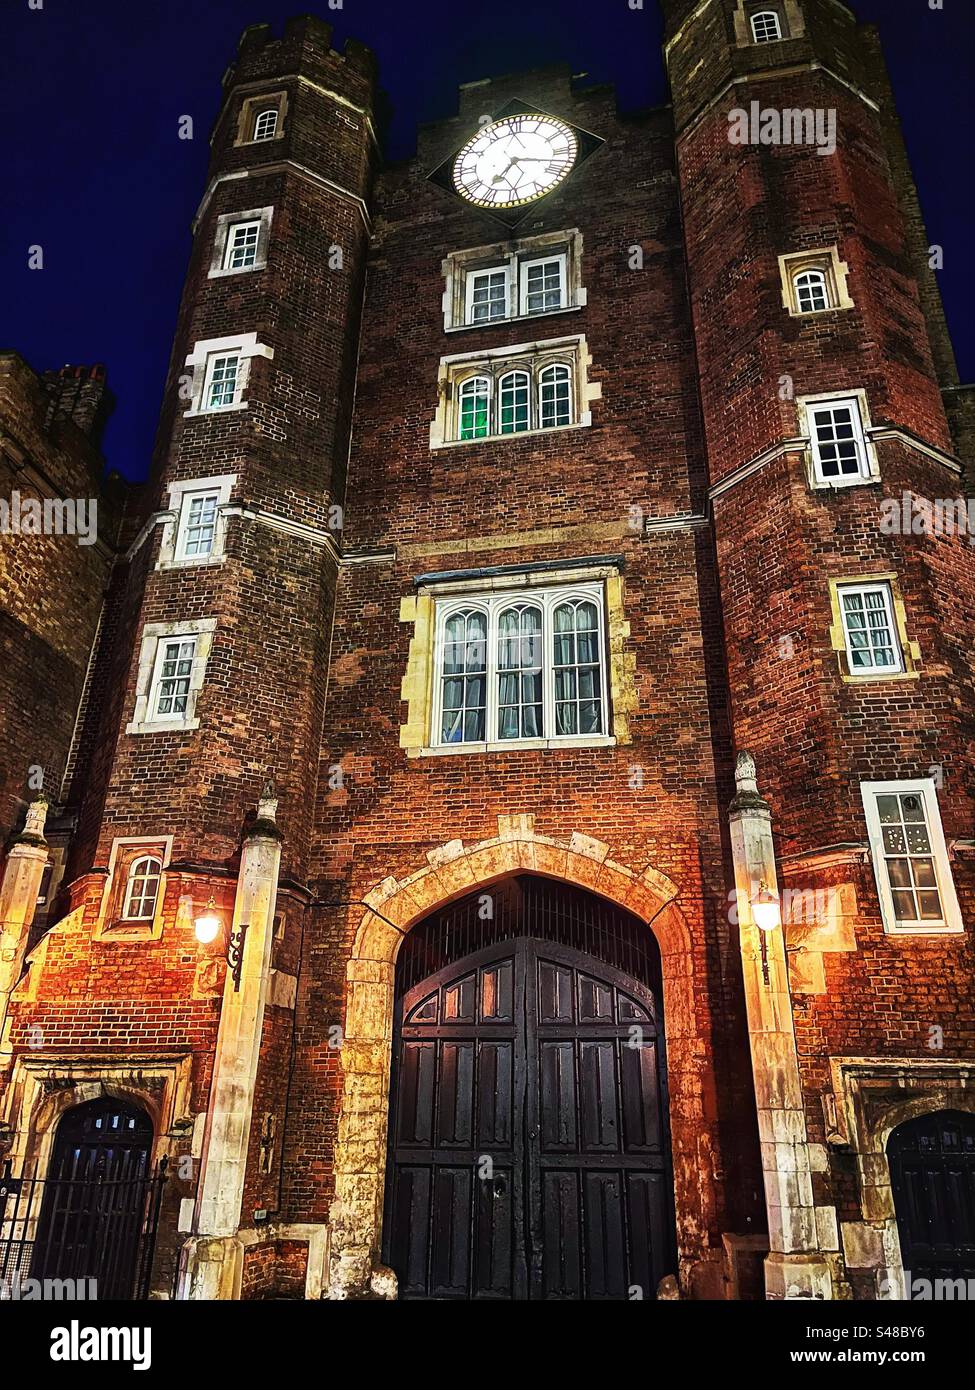 La torre principal del reloj y la puerta de entrada en el Palacio de St James en Londres visto por la noche. Este sigue siendo el hogar de la Corte Real. Foto de stock